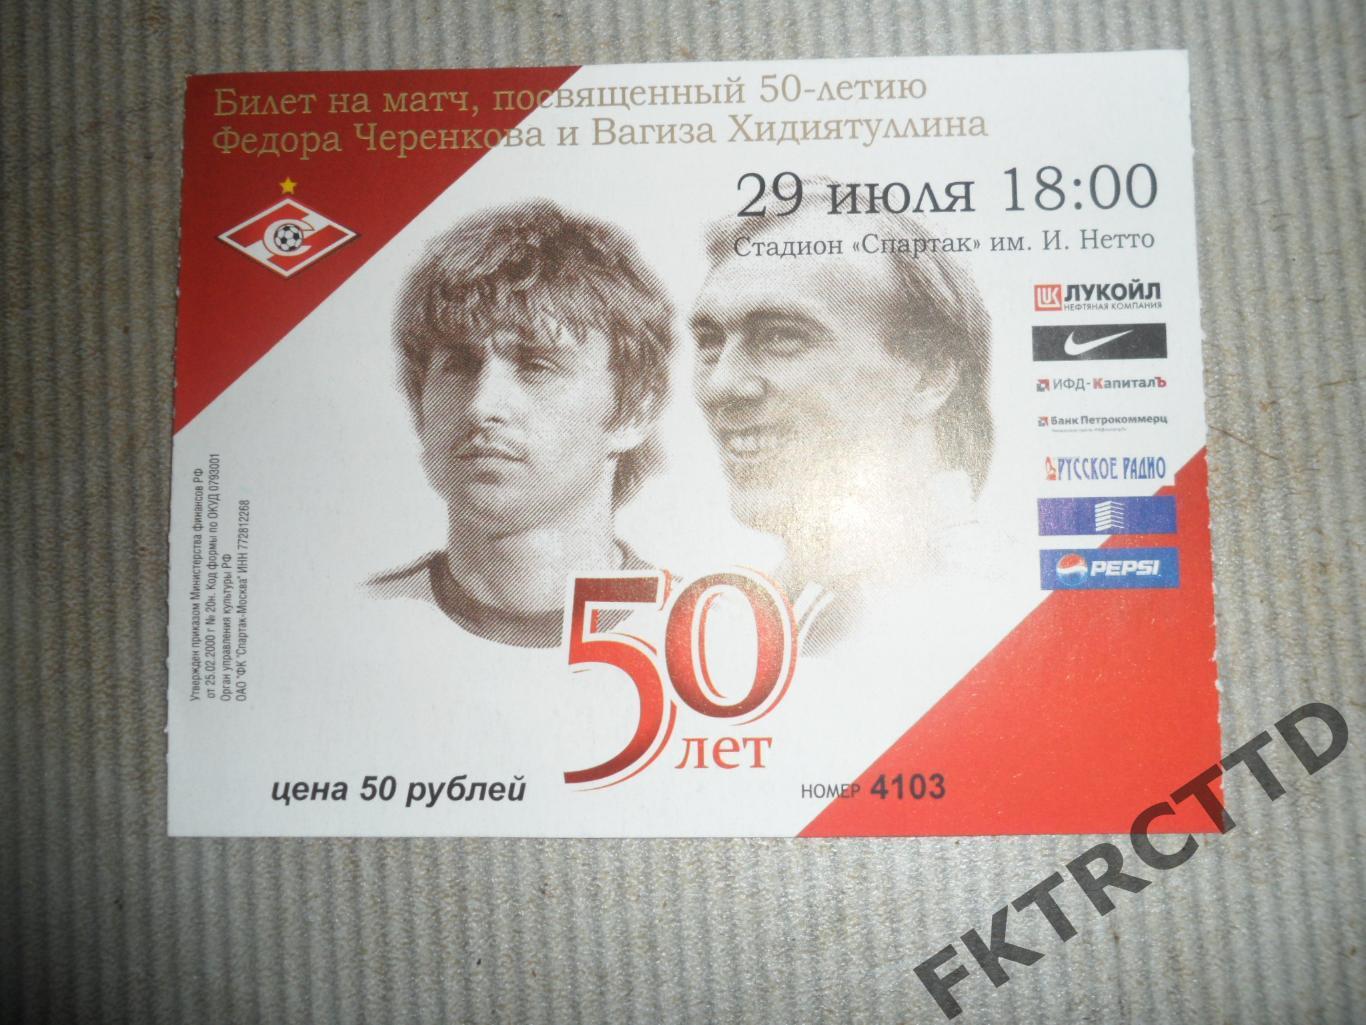 Билет-Посвящённый 50 летию ЧЕРЕНКОВА и ХИДИЯТУЛИНА